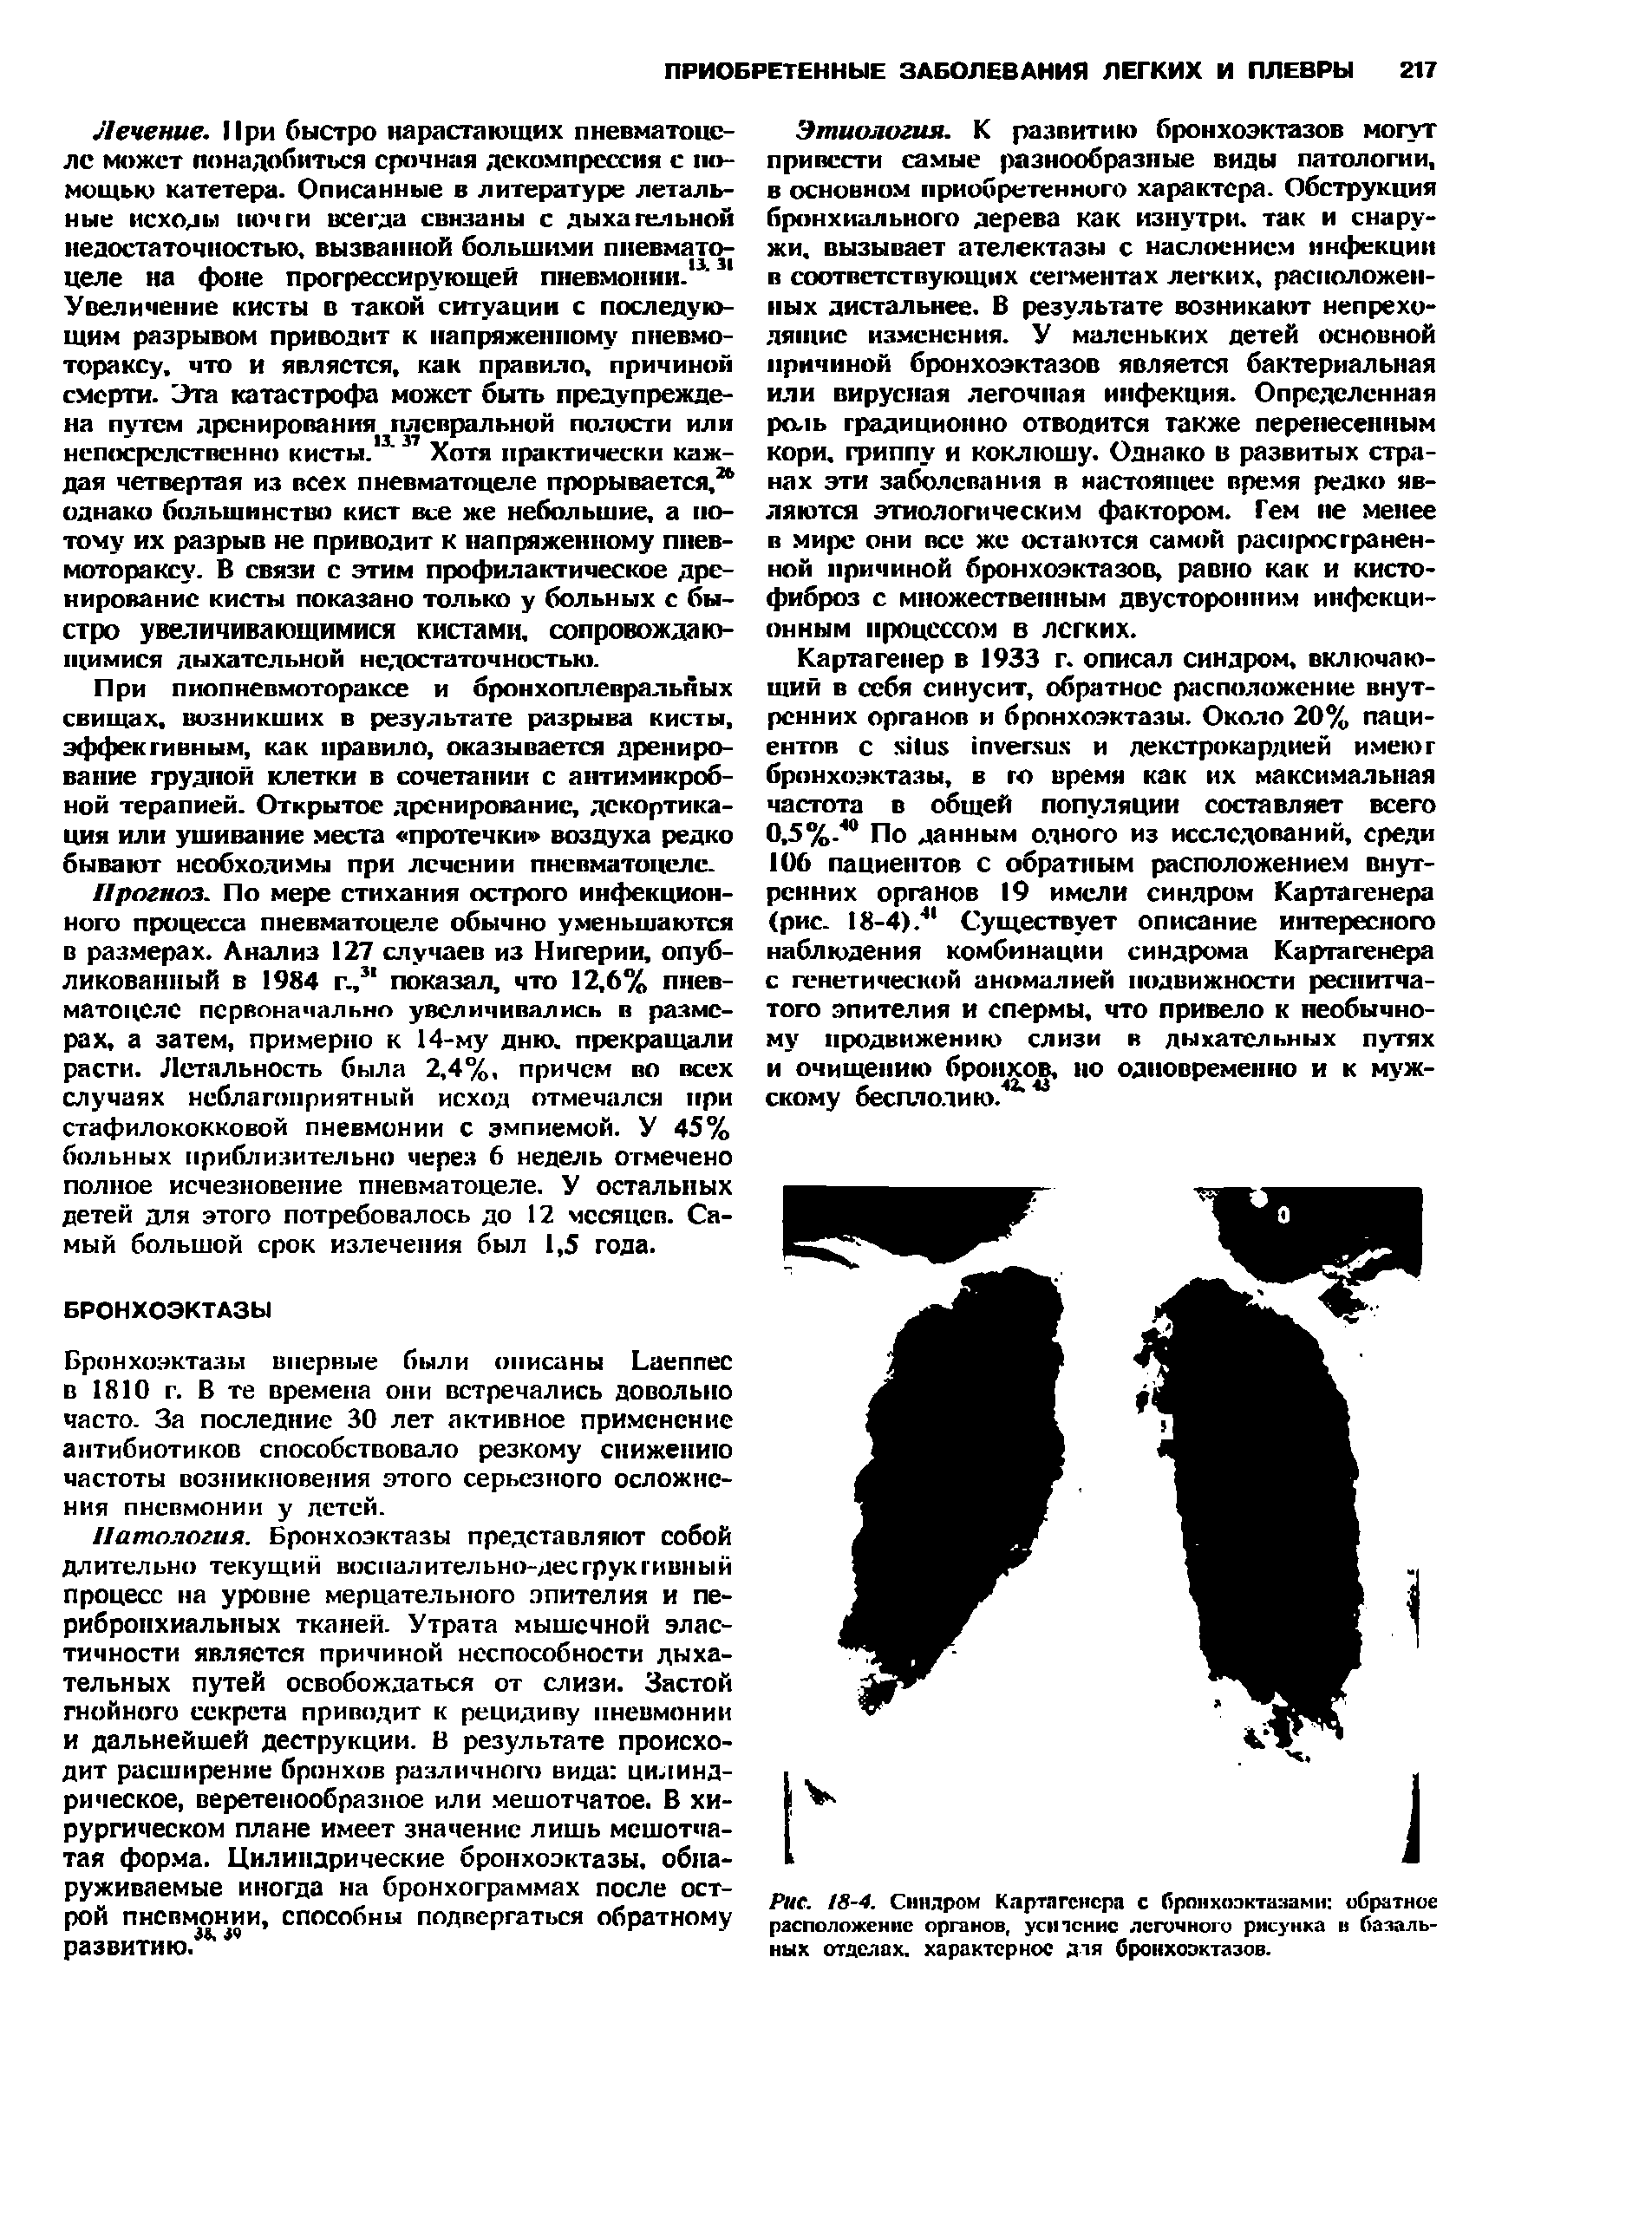 Рис. 18-4. Синдром Картагенера с бронхоэктазами обратное расположение органов, усн пение легочного рисунка в базальных отделах, характерное для бронхоэктазов.